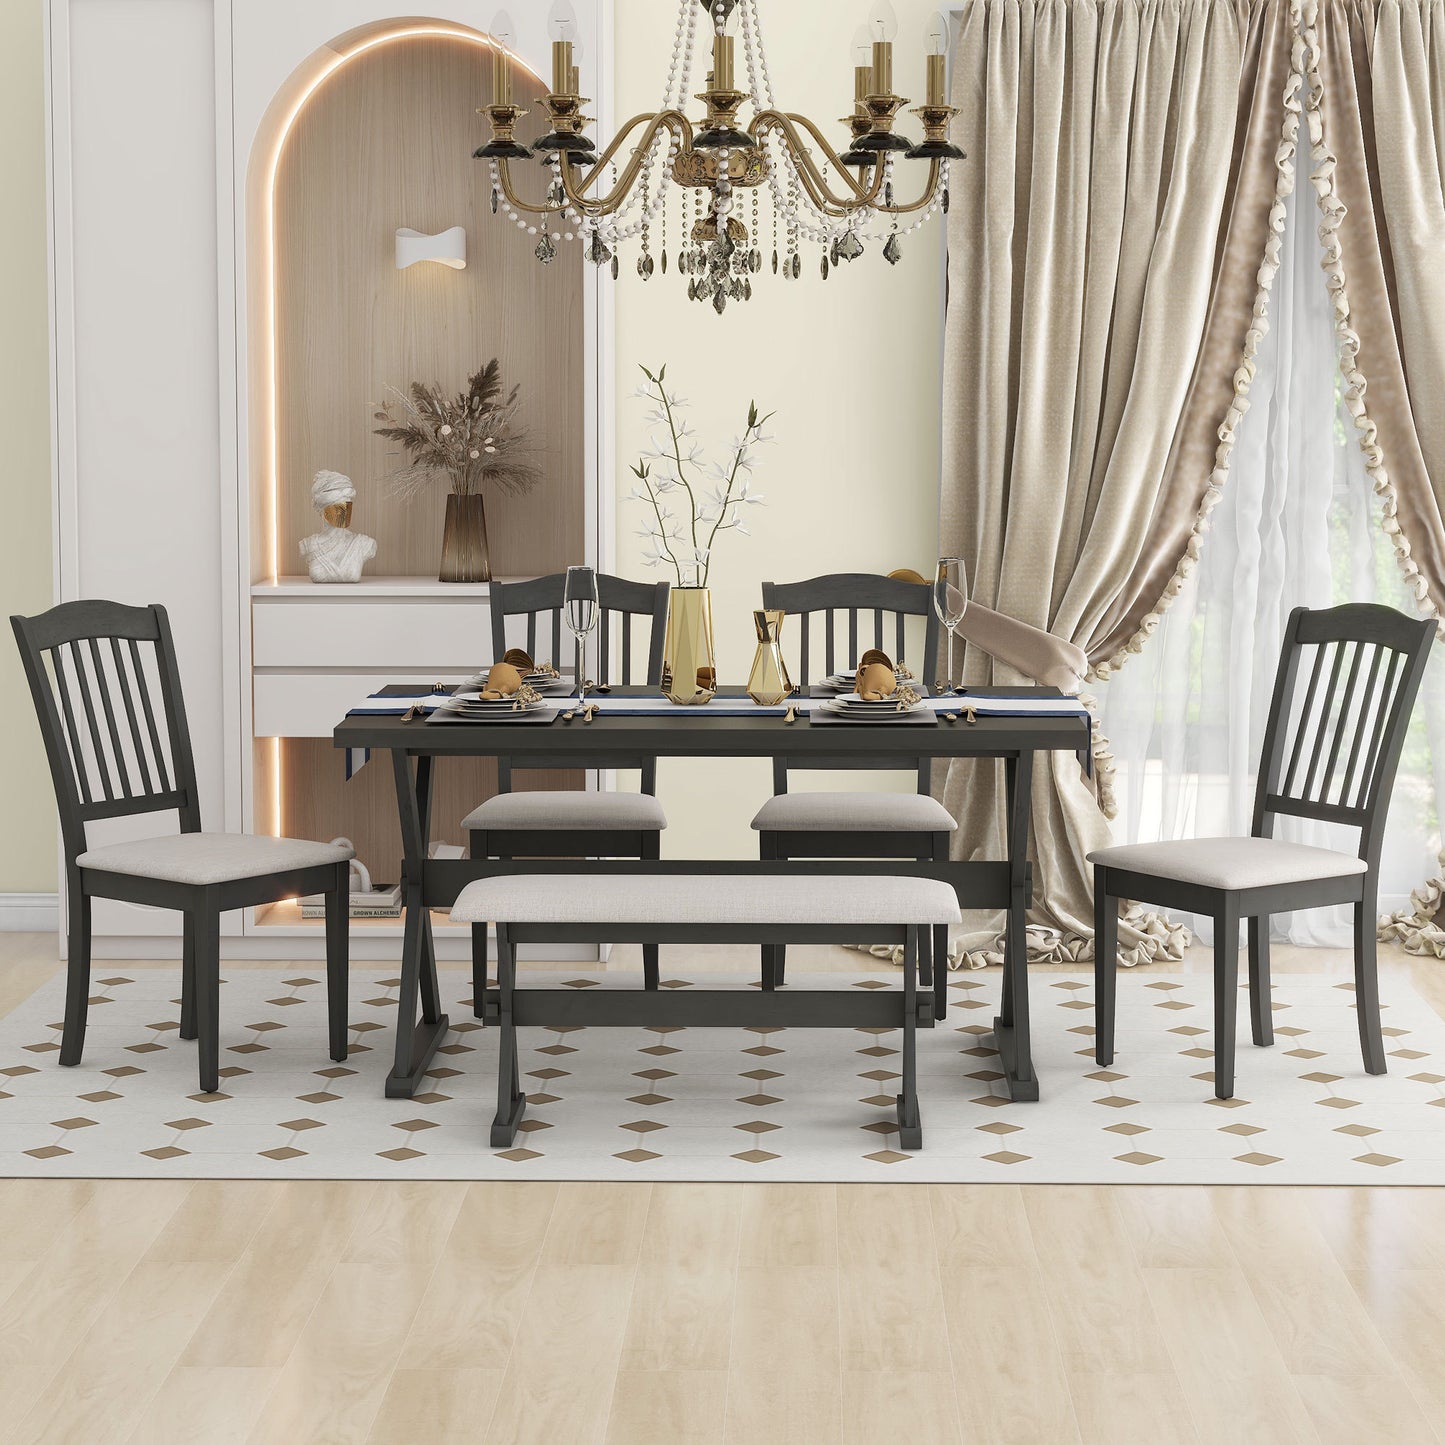 6-teiliges rustikales Esszimmerset, rechteckiger Tisch mit X-Gestell und 4 gepolsterte Stühle und Bank (Grau)